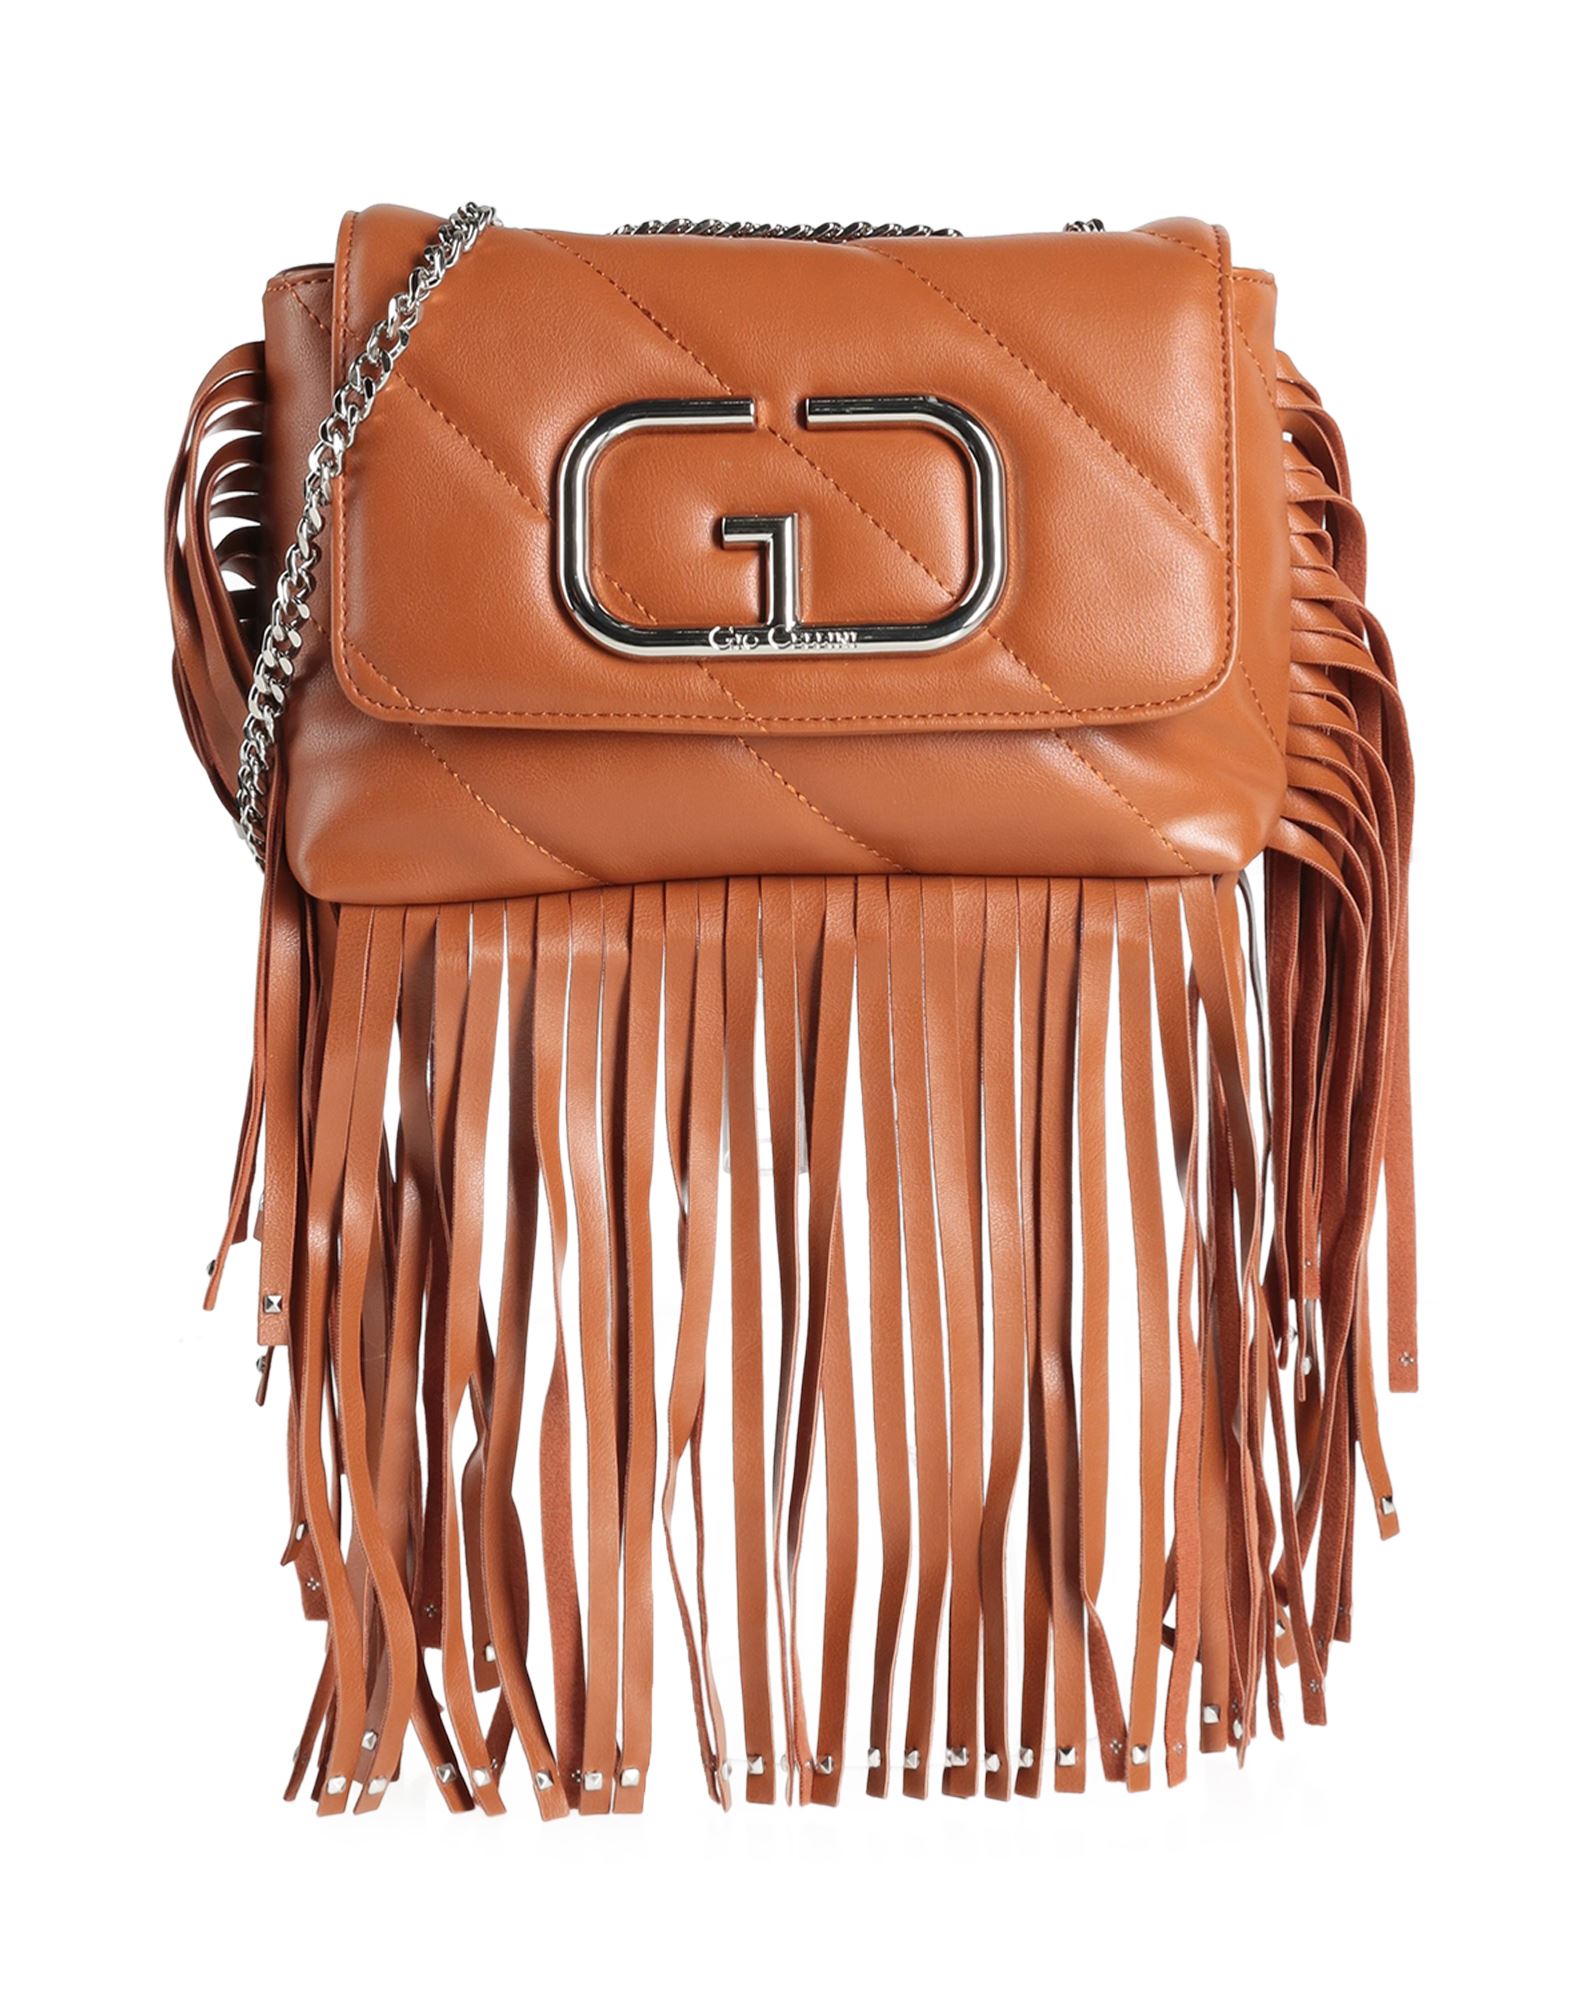 Gio Cellini Milano Handbags In Tan